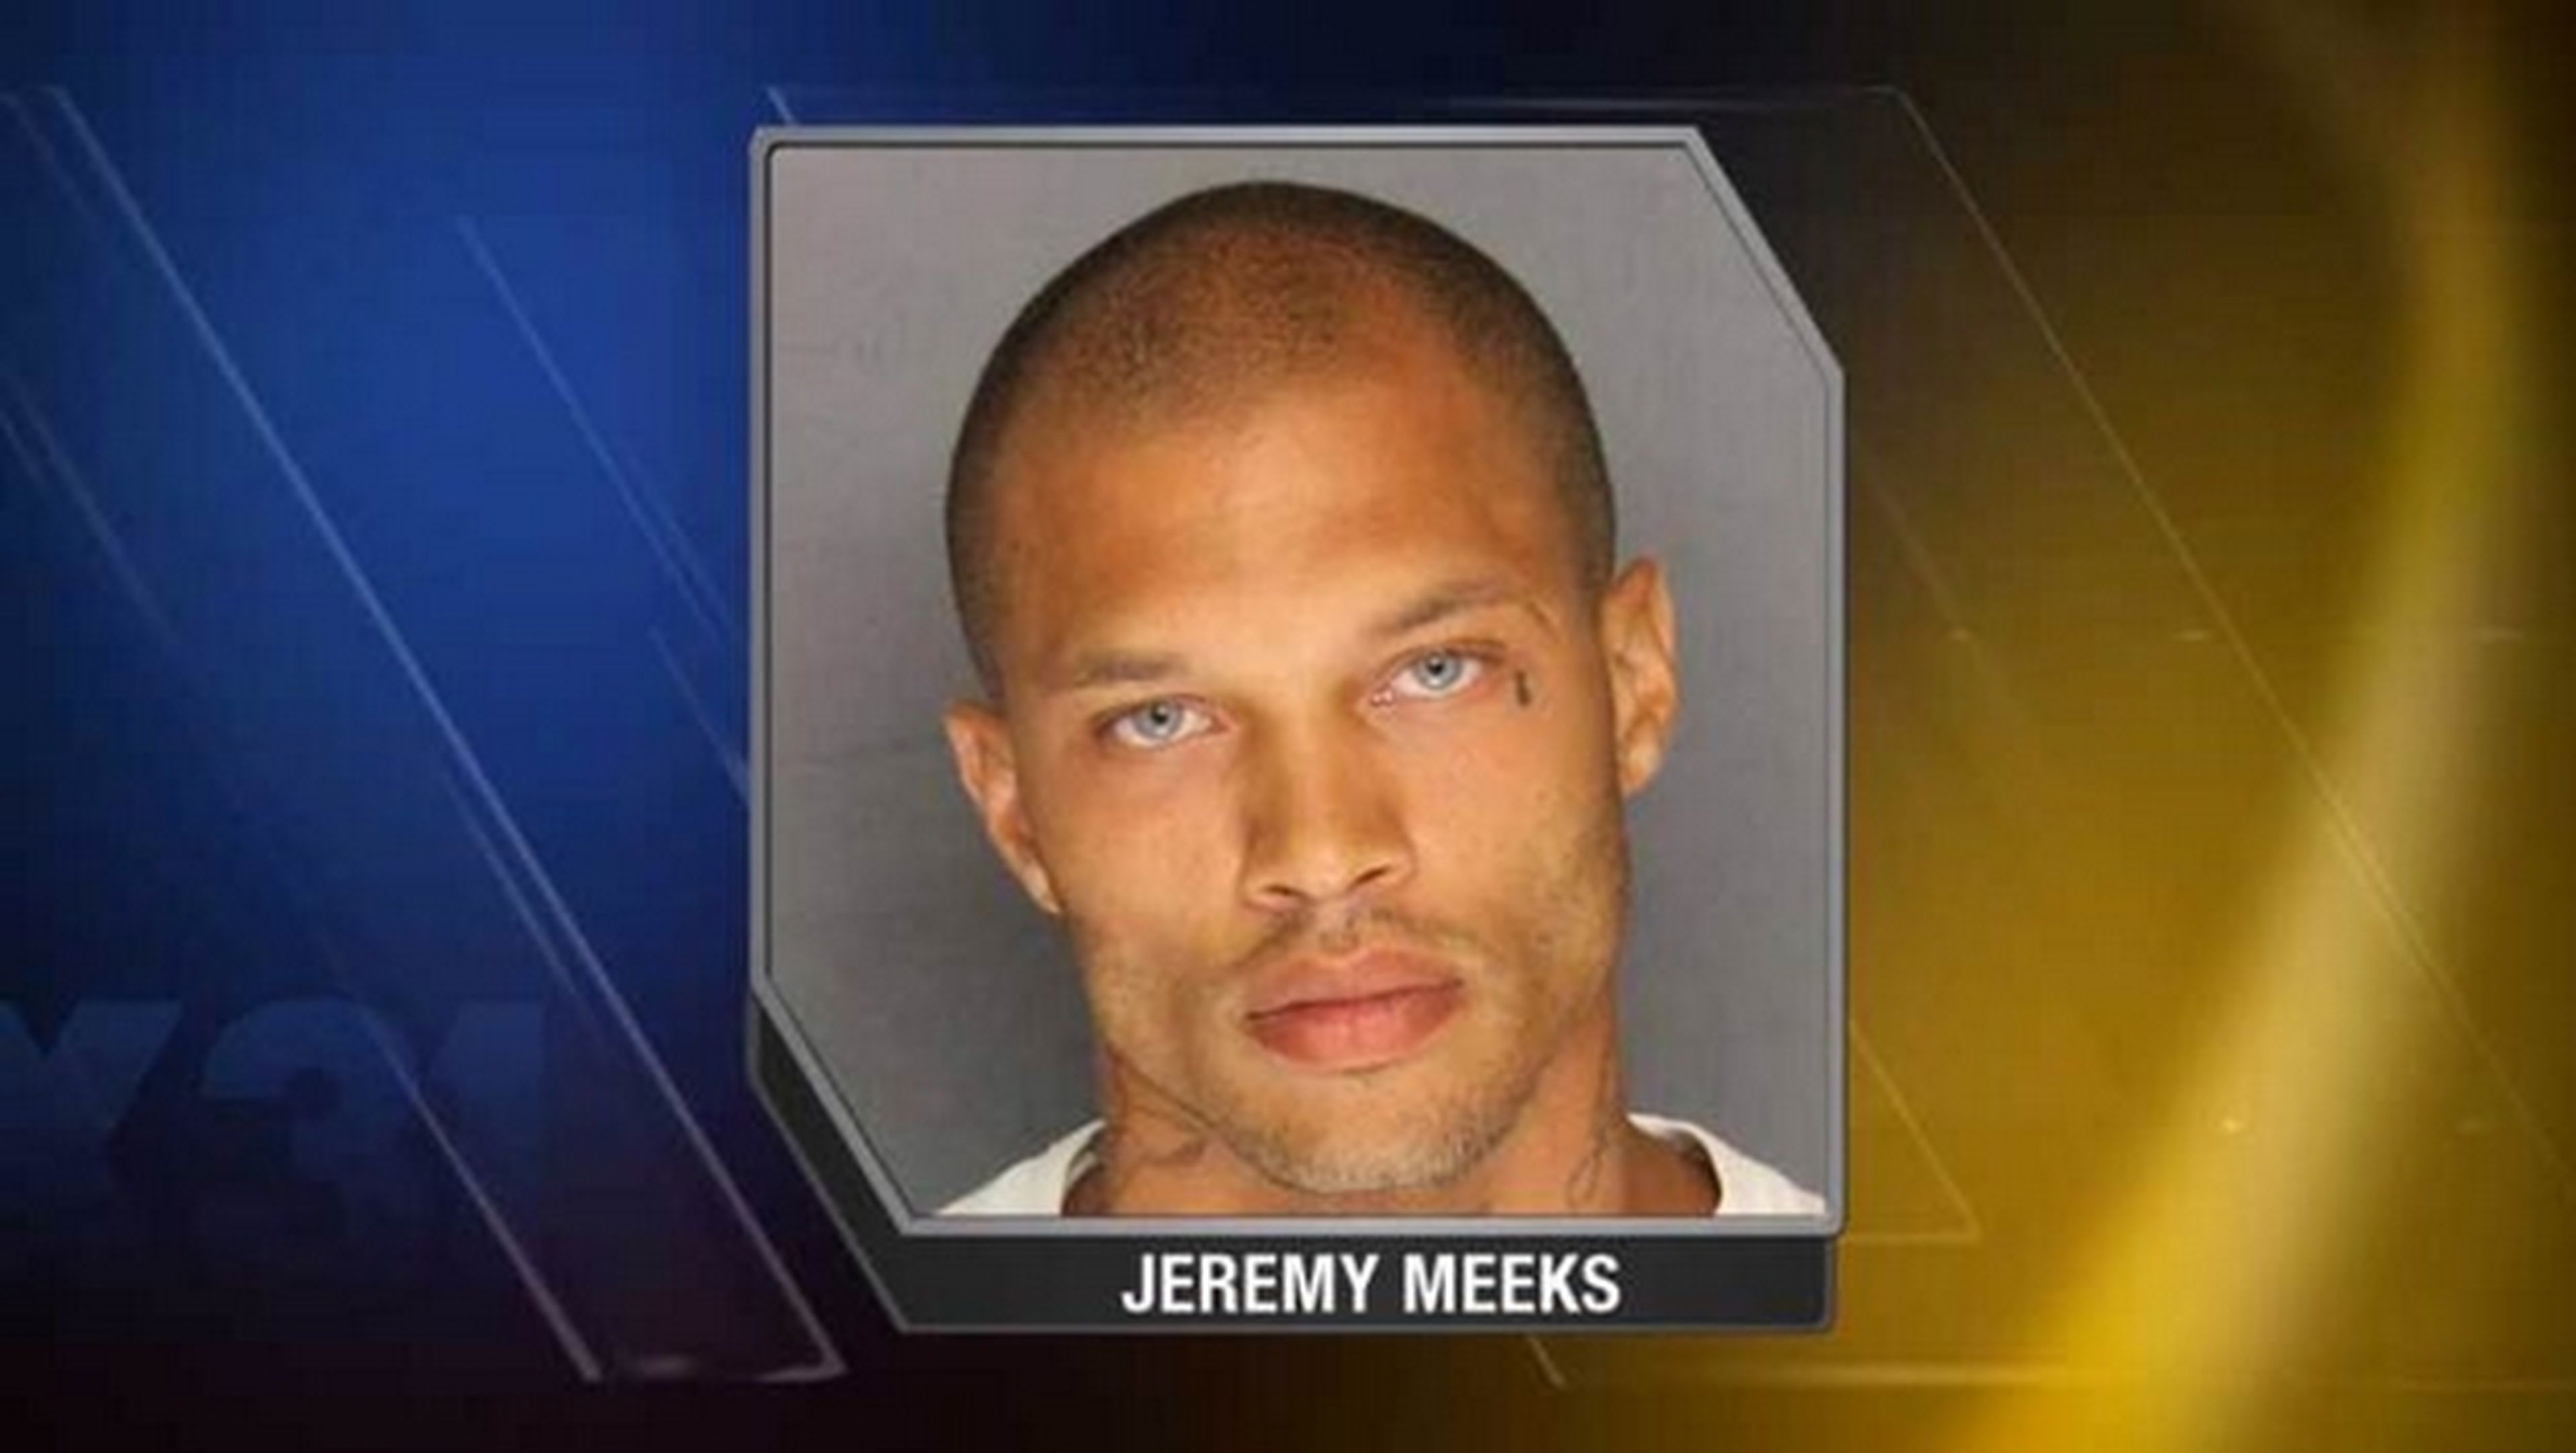 Jeremy Meeks, el preso más guapo con aspecto de modelo, fenómeno viral en Facebook gracias a los memes.